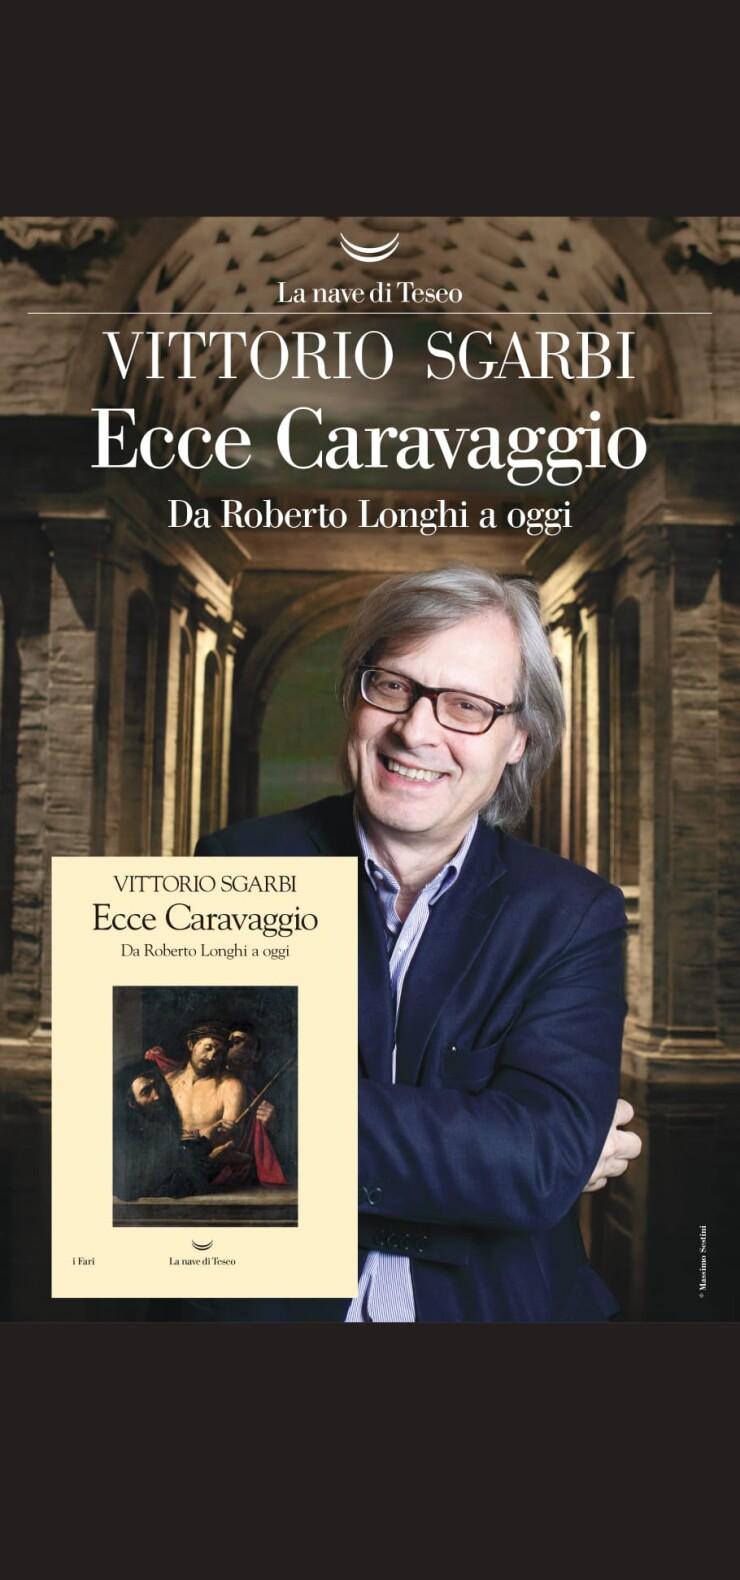 FOSSANO: Vittorio Sgarbi in "Caravaggio e la storia di Fossano"